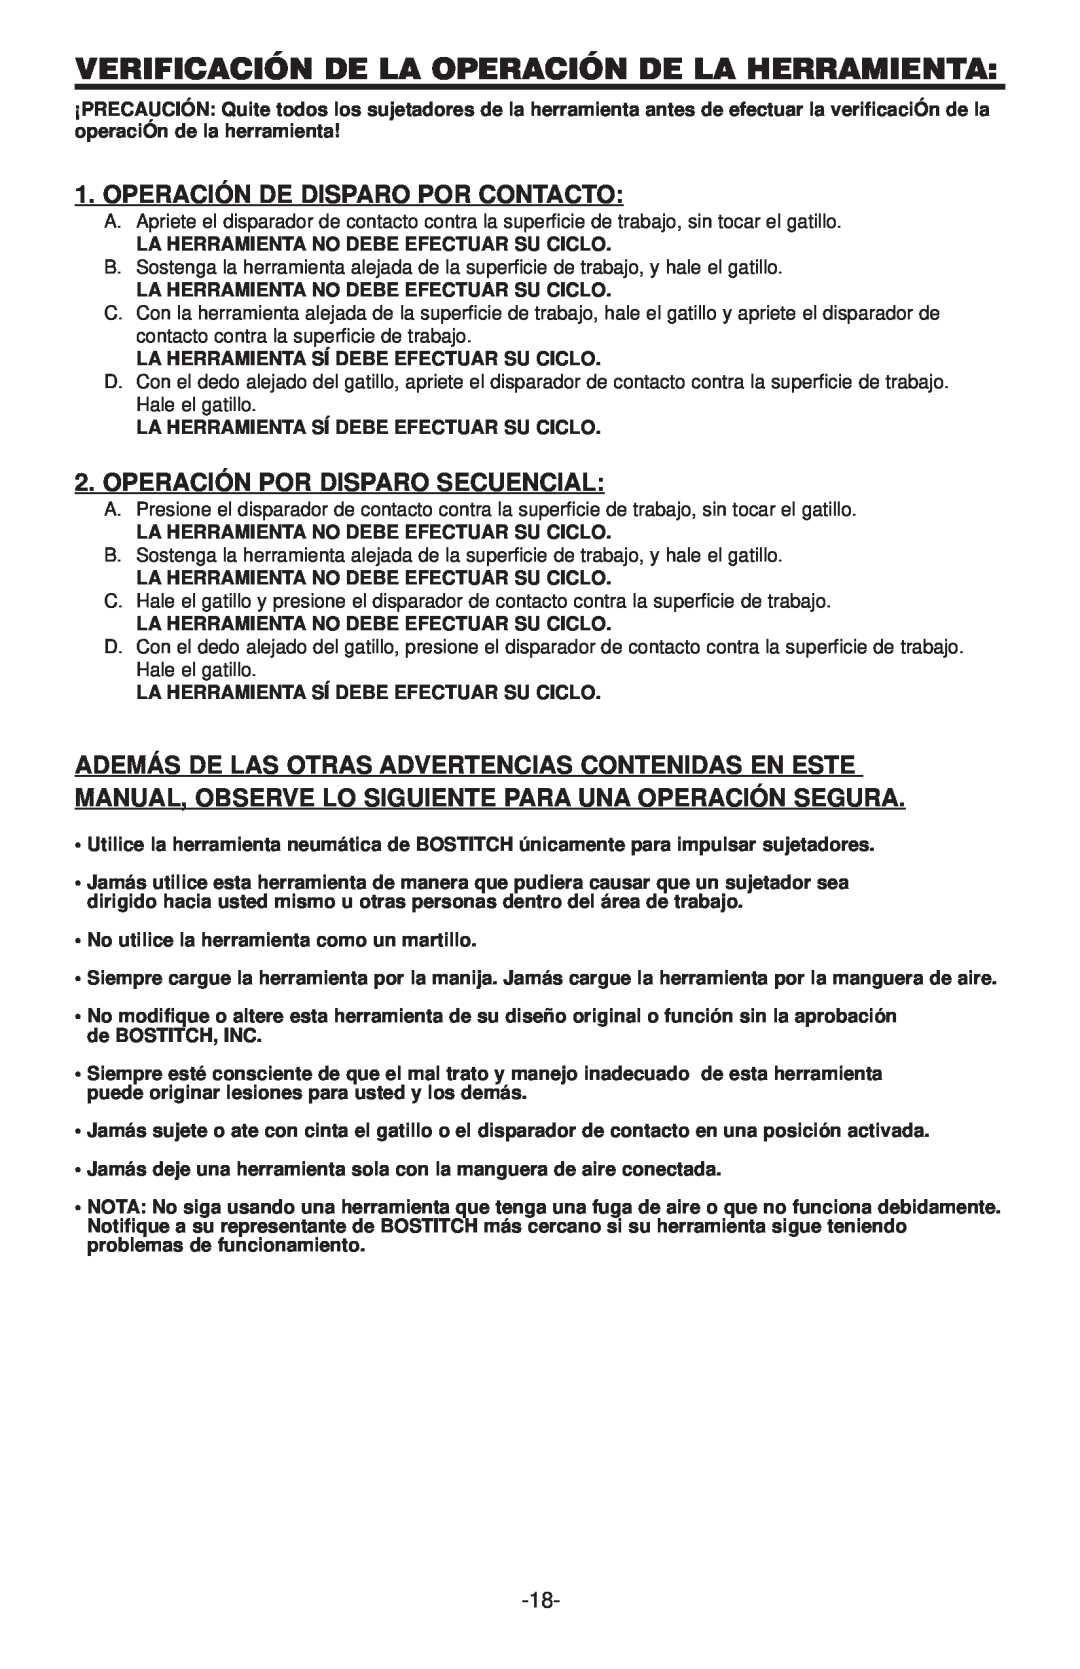 Bostitch N100CPP, N130C manual Verificación De La Operación De La Herramienta, Operación Por Disp Aro Secuencial 